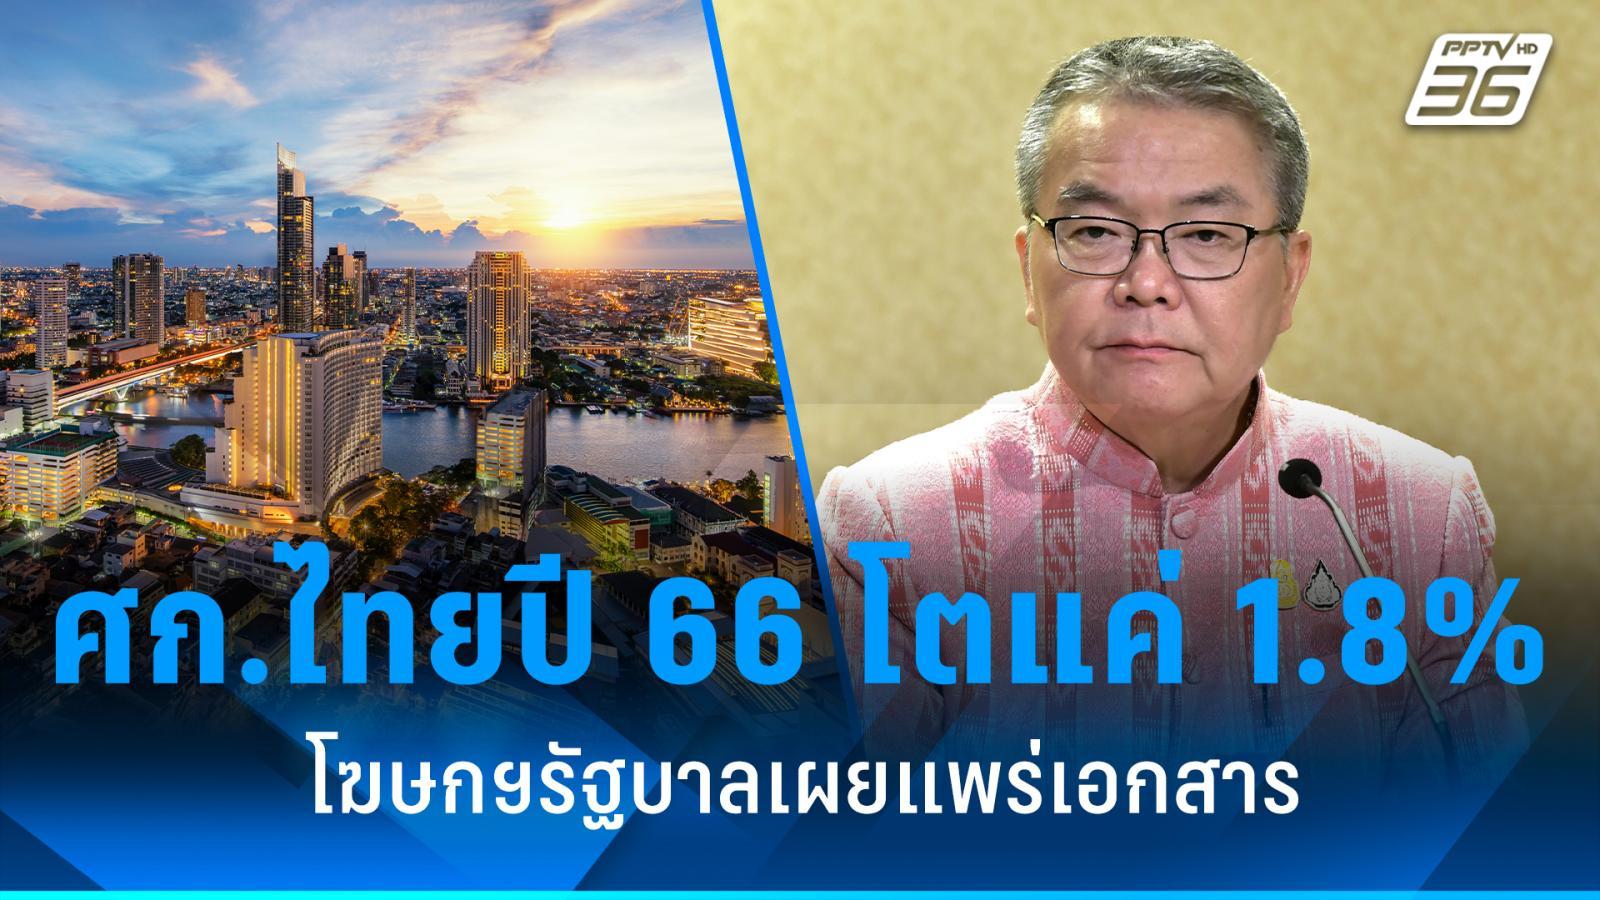 โฆษกฯ รัฐบาล เผยแพร่เอกสาร เศรษฐกิจไทยปี 66 โตแค่ 1.8%